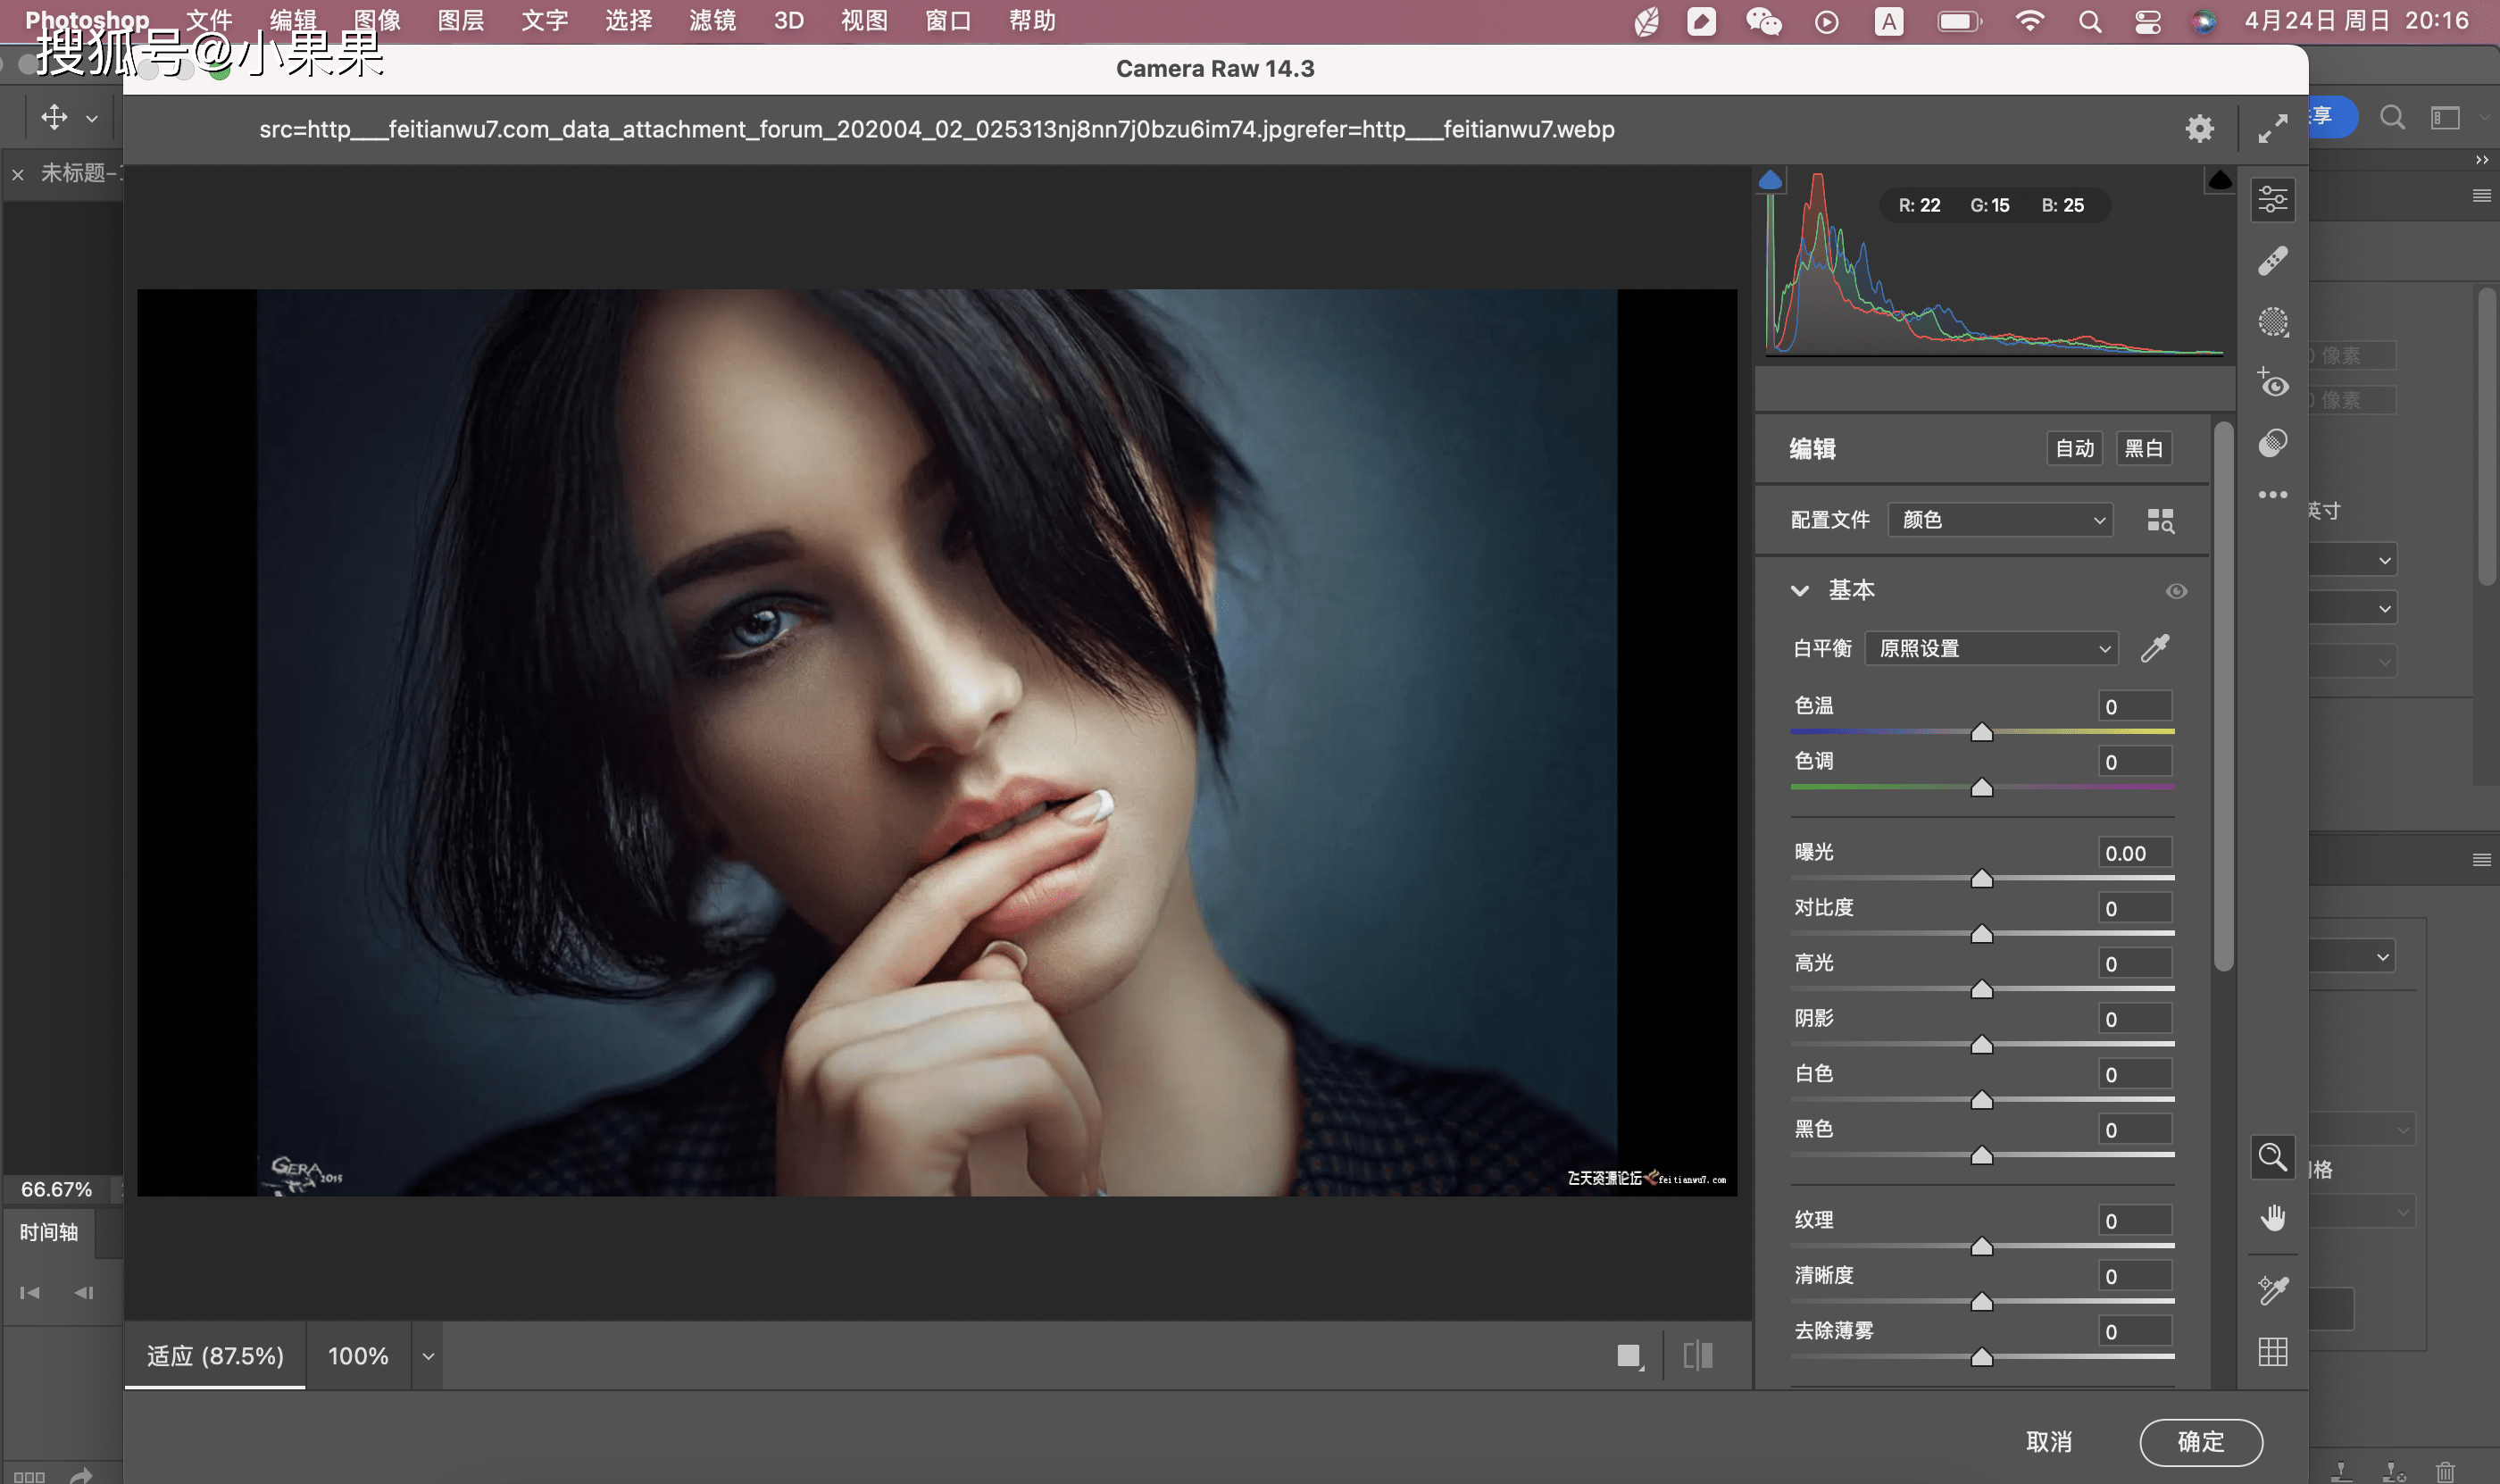 Adobe Photoshop 2022 for Mac版下载安装教程 支持M1芯片